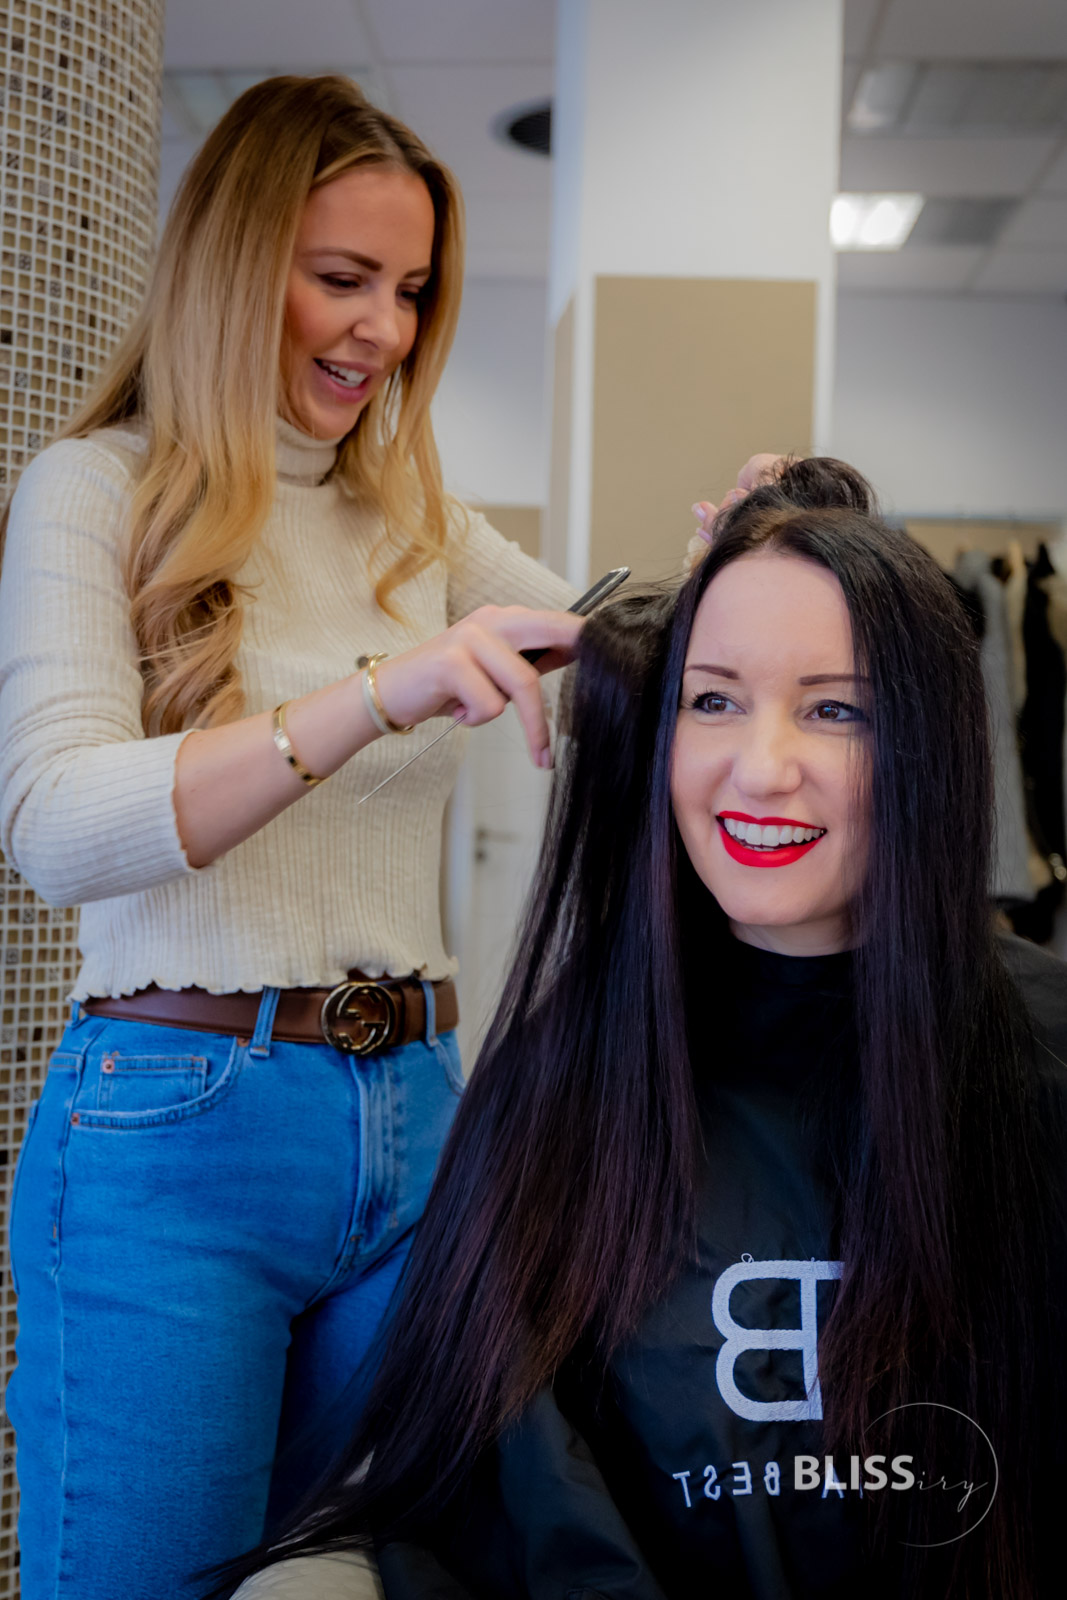 Interview mit Melina Best Friseur - Häufige Fragen zu Extensions - Melina Best Friseur Köln - Häufige Fragen zu Extensions - Balayage - Haarverlängerung und Haarverdichtung - Was kostet eine Haarverlängerung - Interview